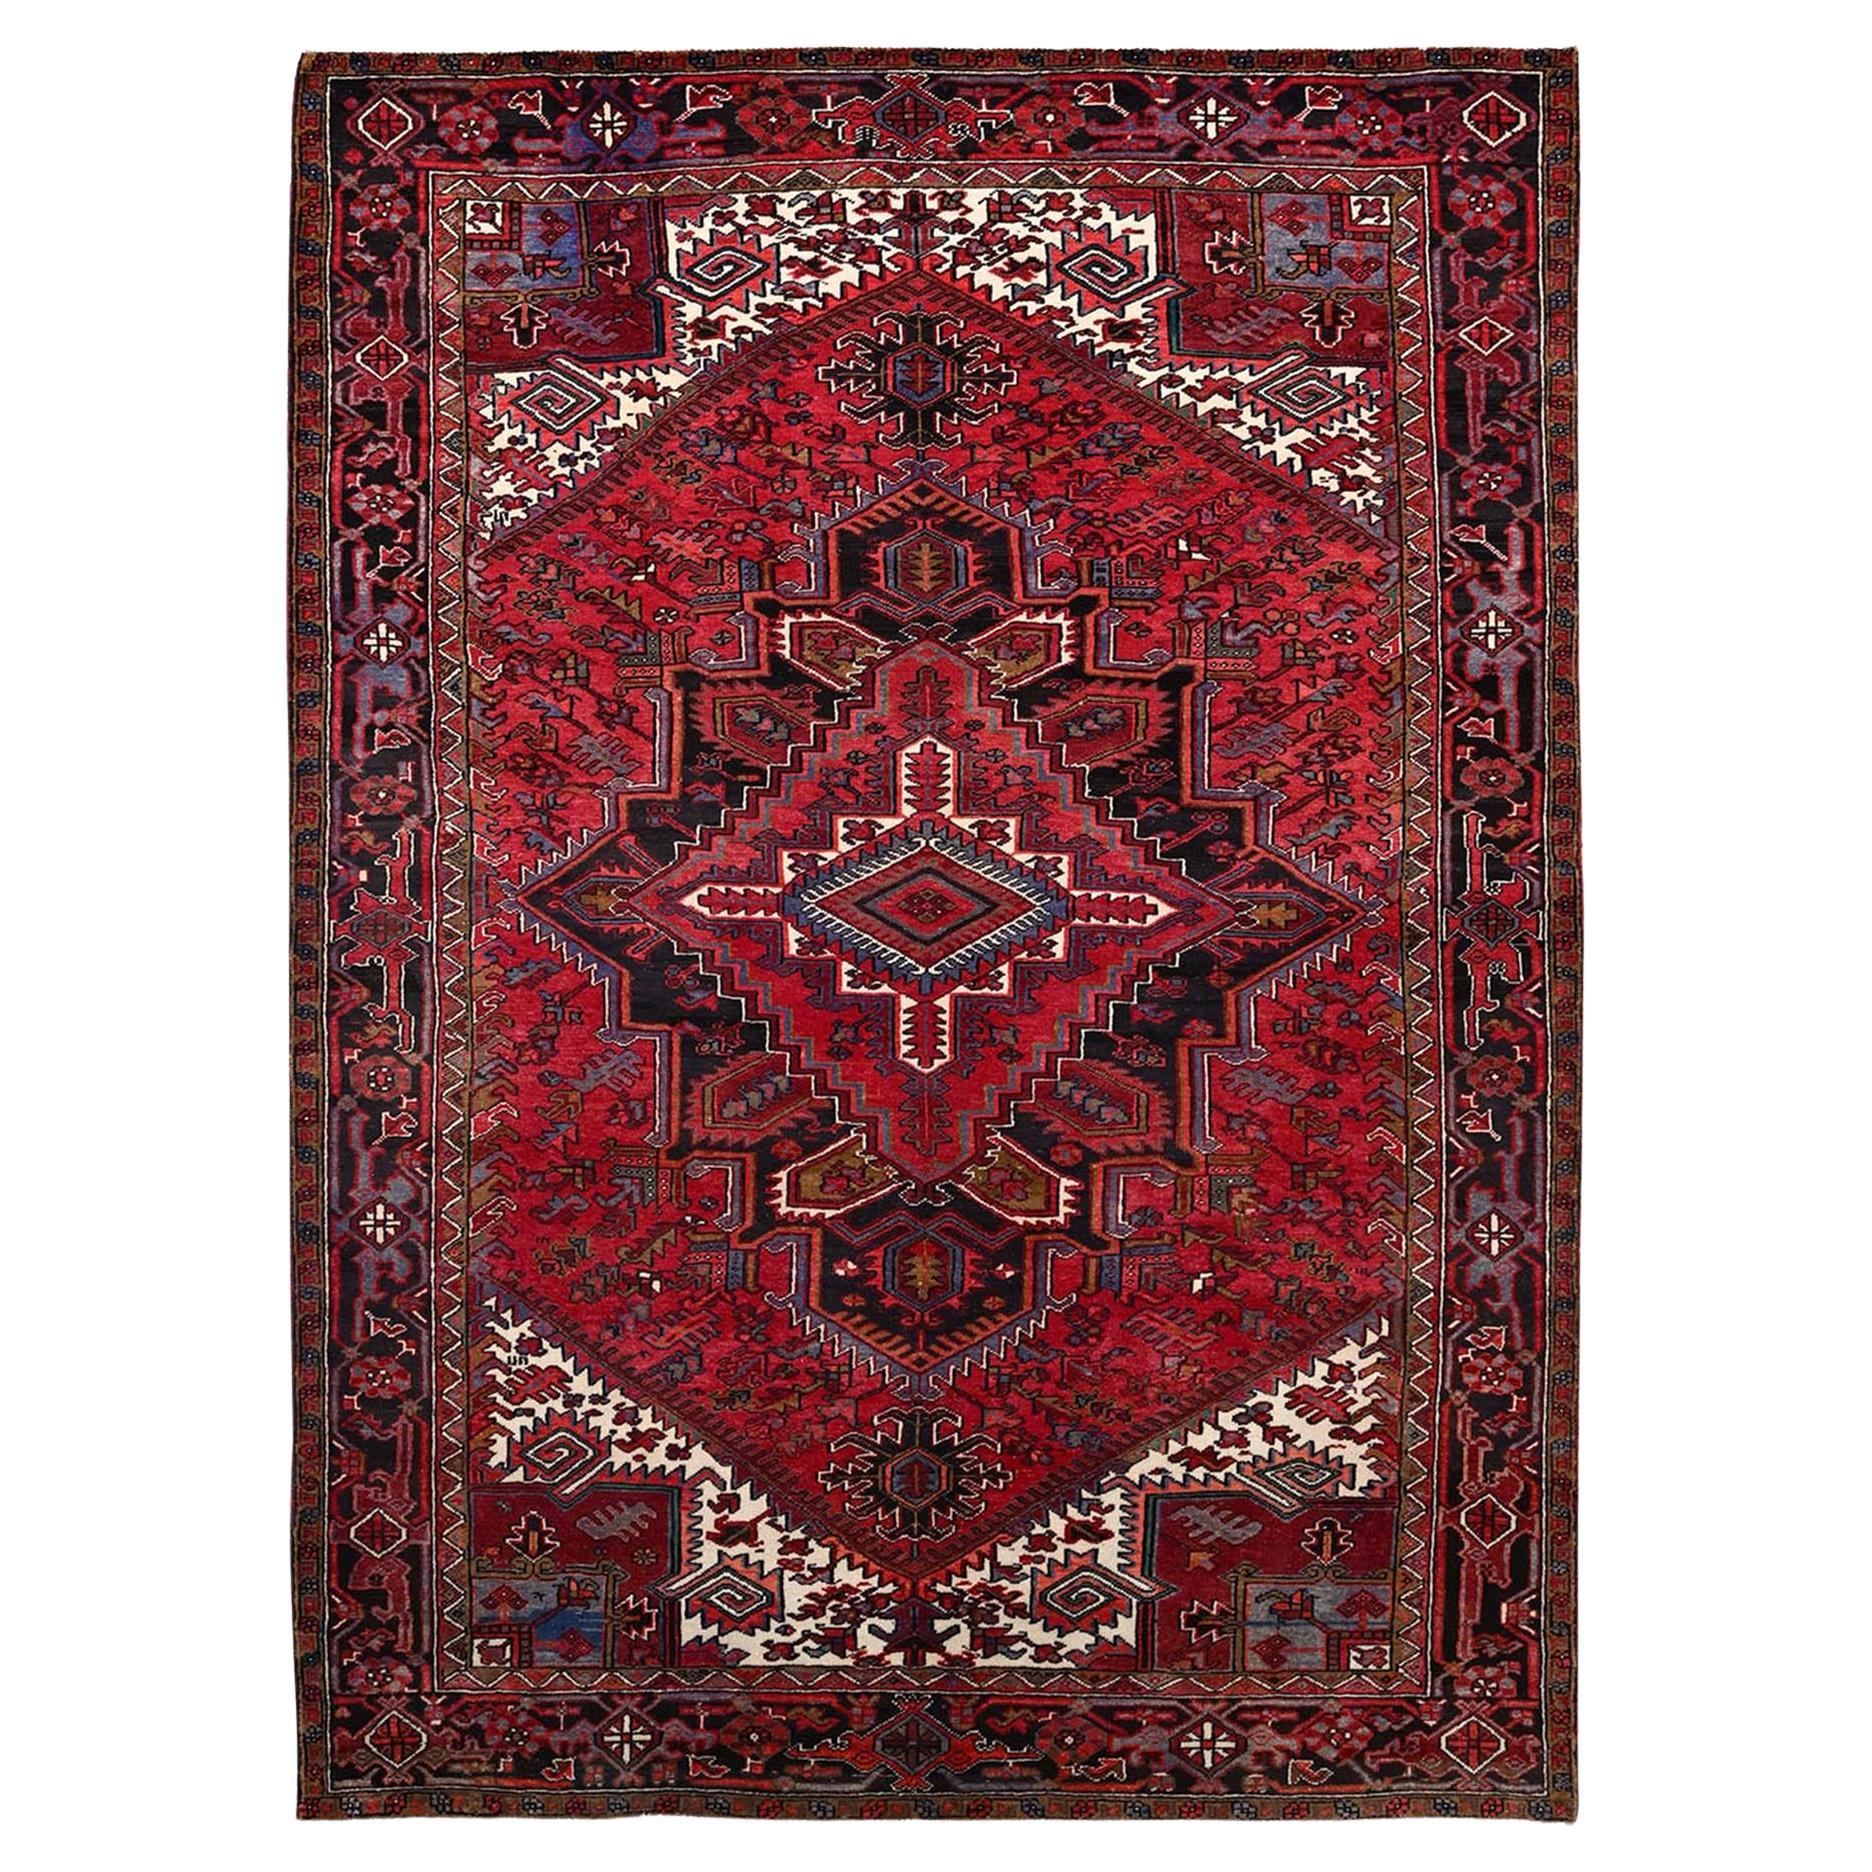 Persischer handgeknüpfter Heriz Distressed Orientalischer Teppich aus reiner Wolle in Rot, Vintage